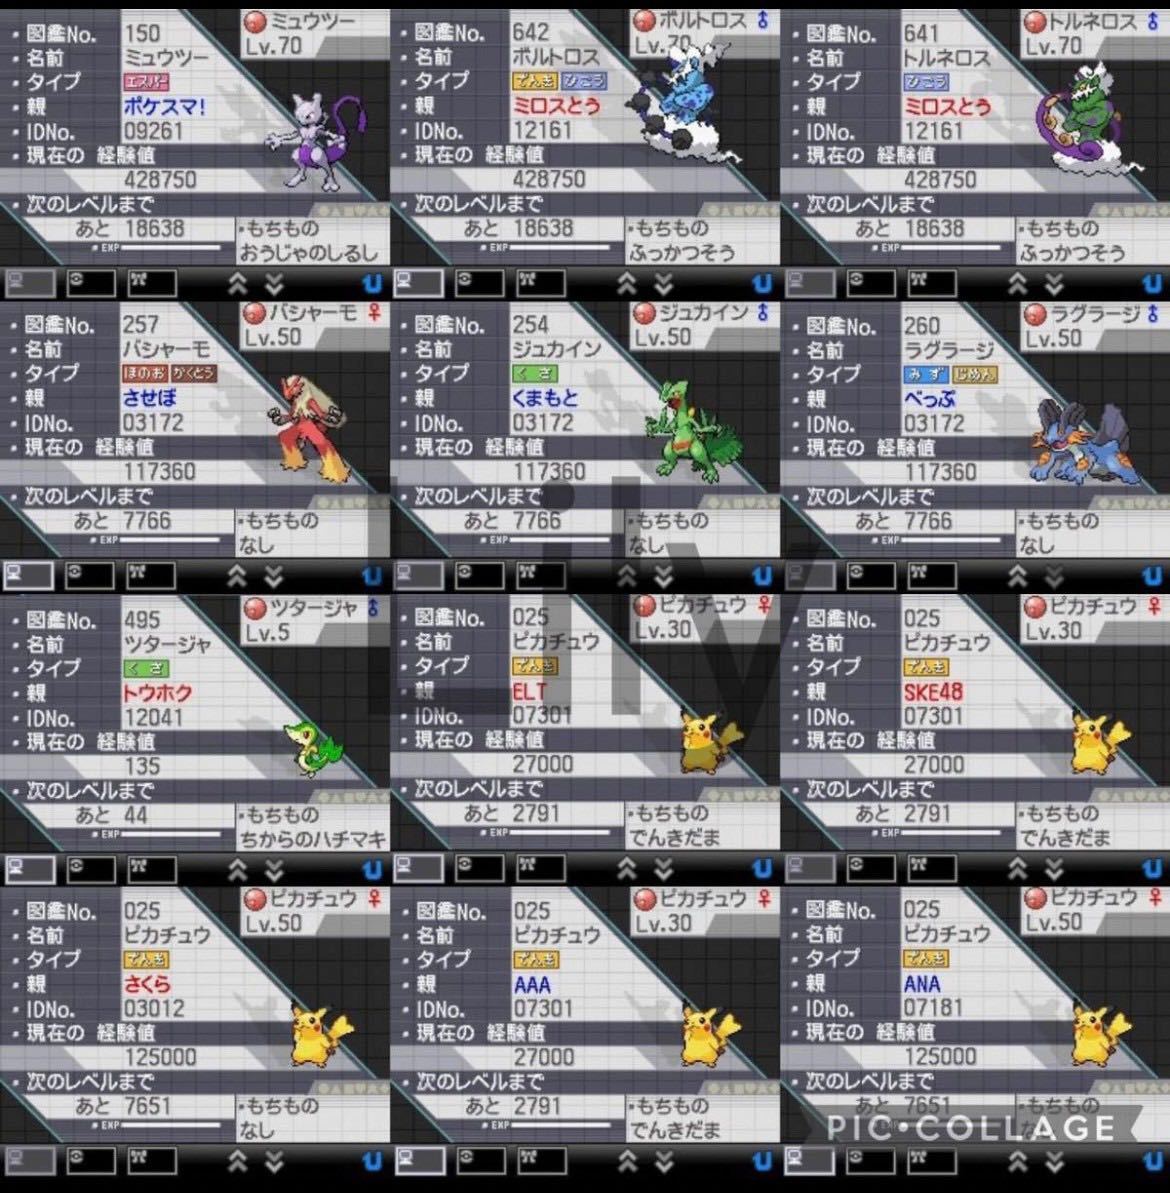 【ポケモン】ホワイト2 配信 6vメタモン付き 道具完備 ポケットモンスター最強データ 3DS ソフト_画像7